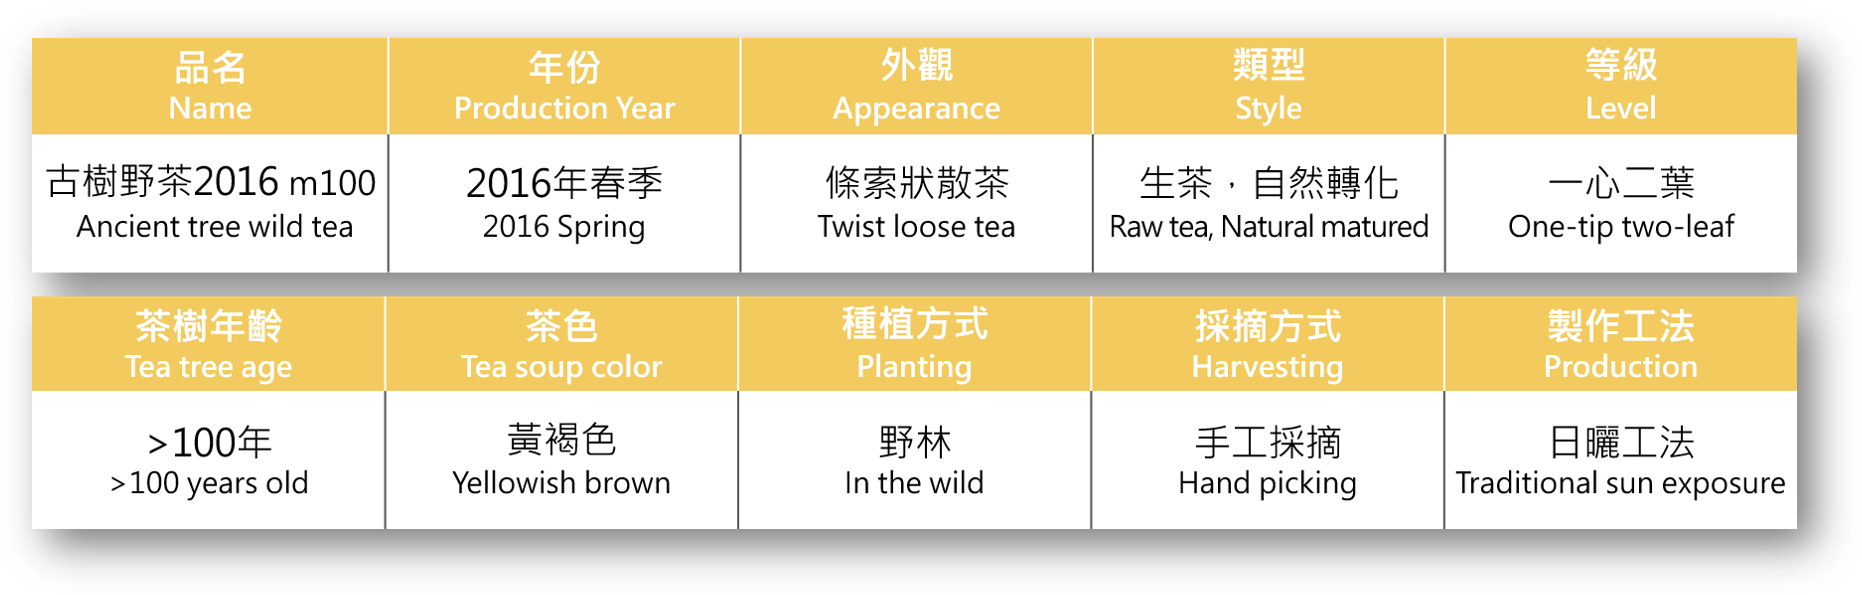 古樹野茶2016規格表.png